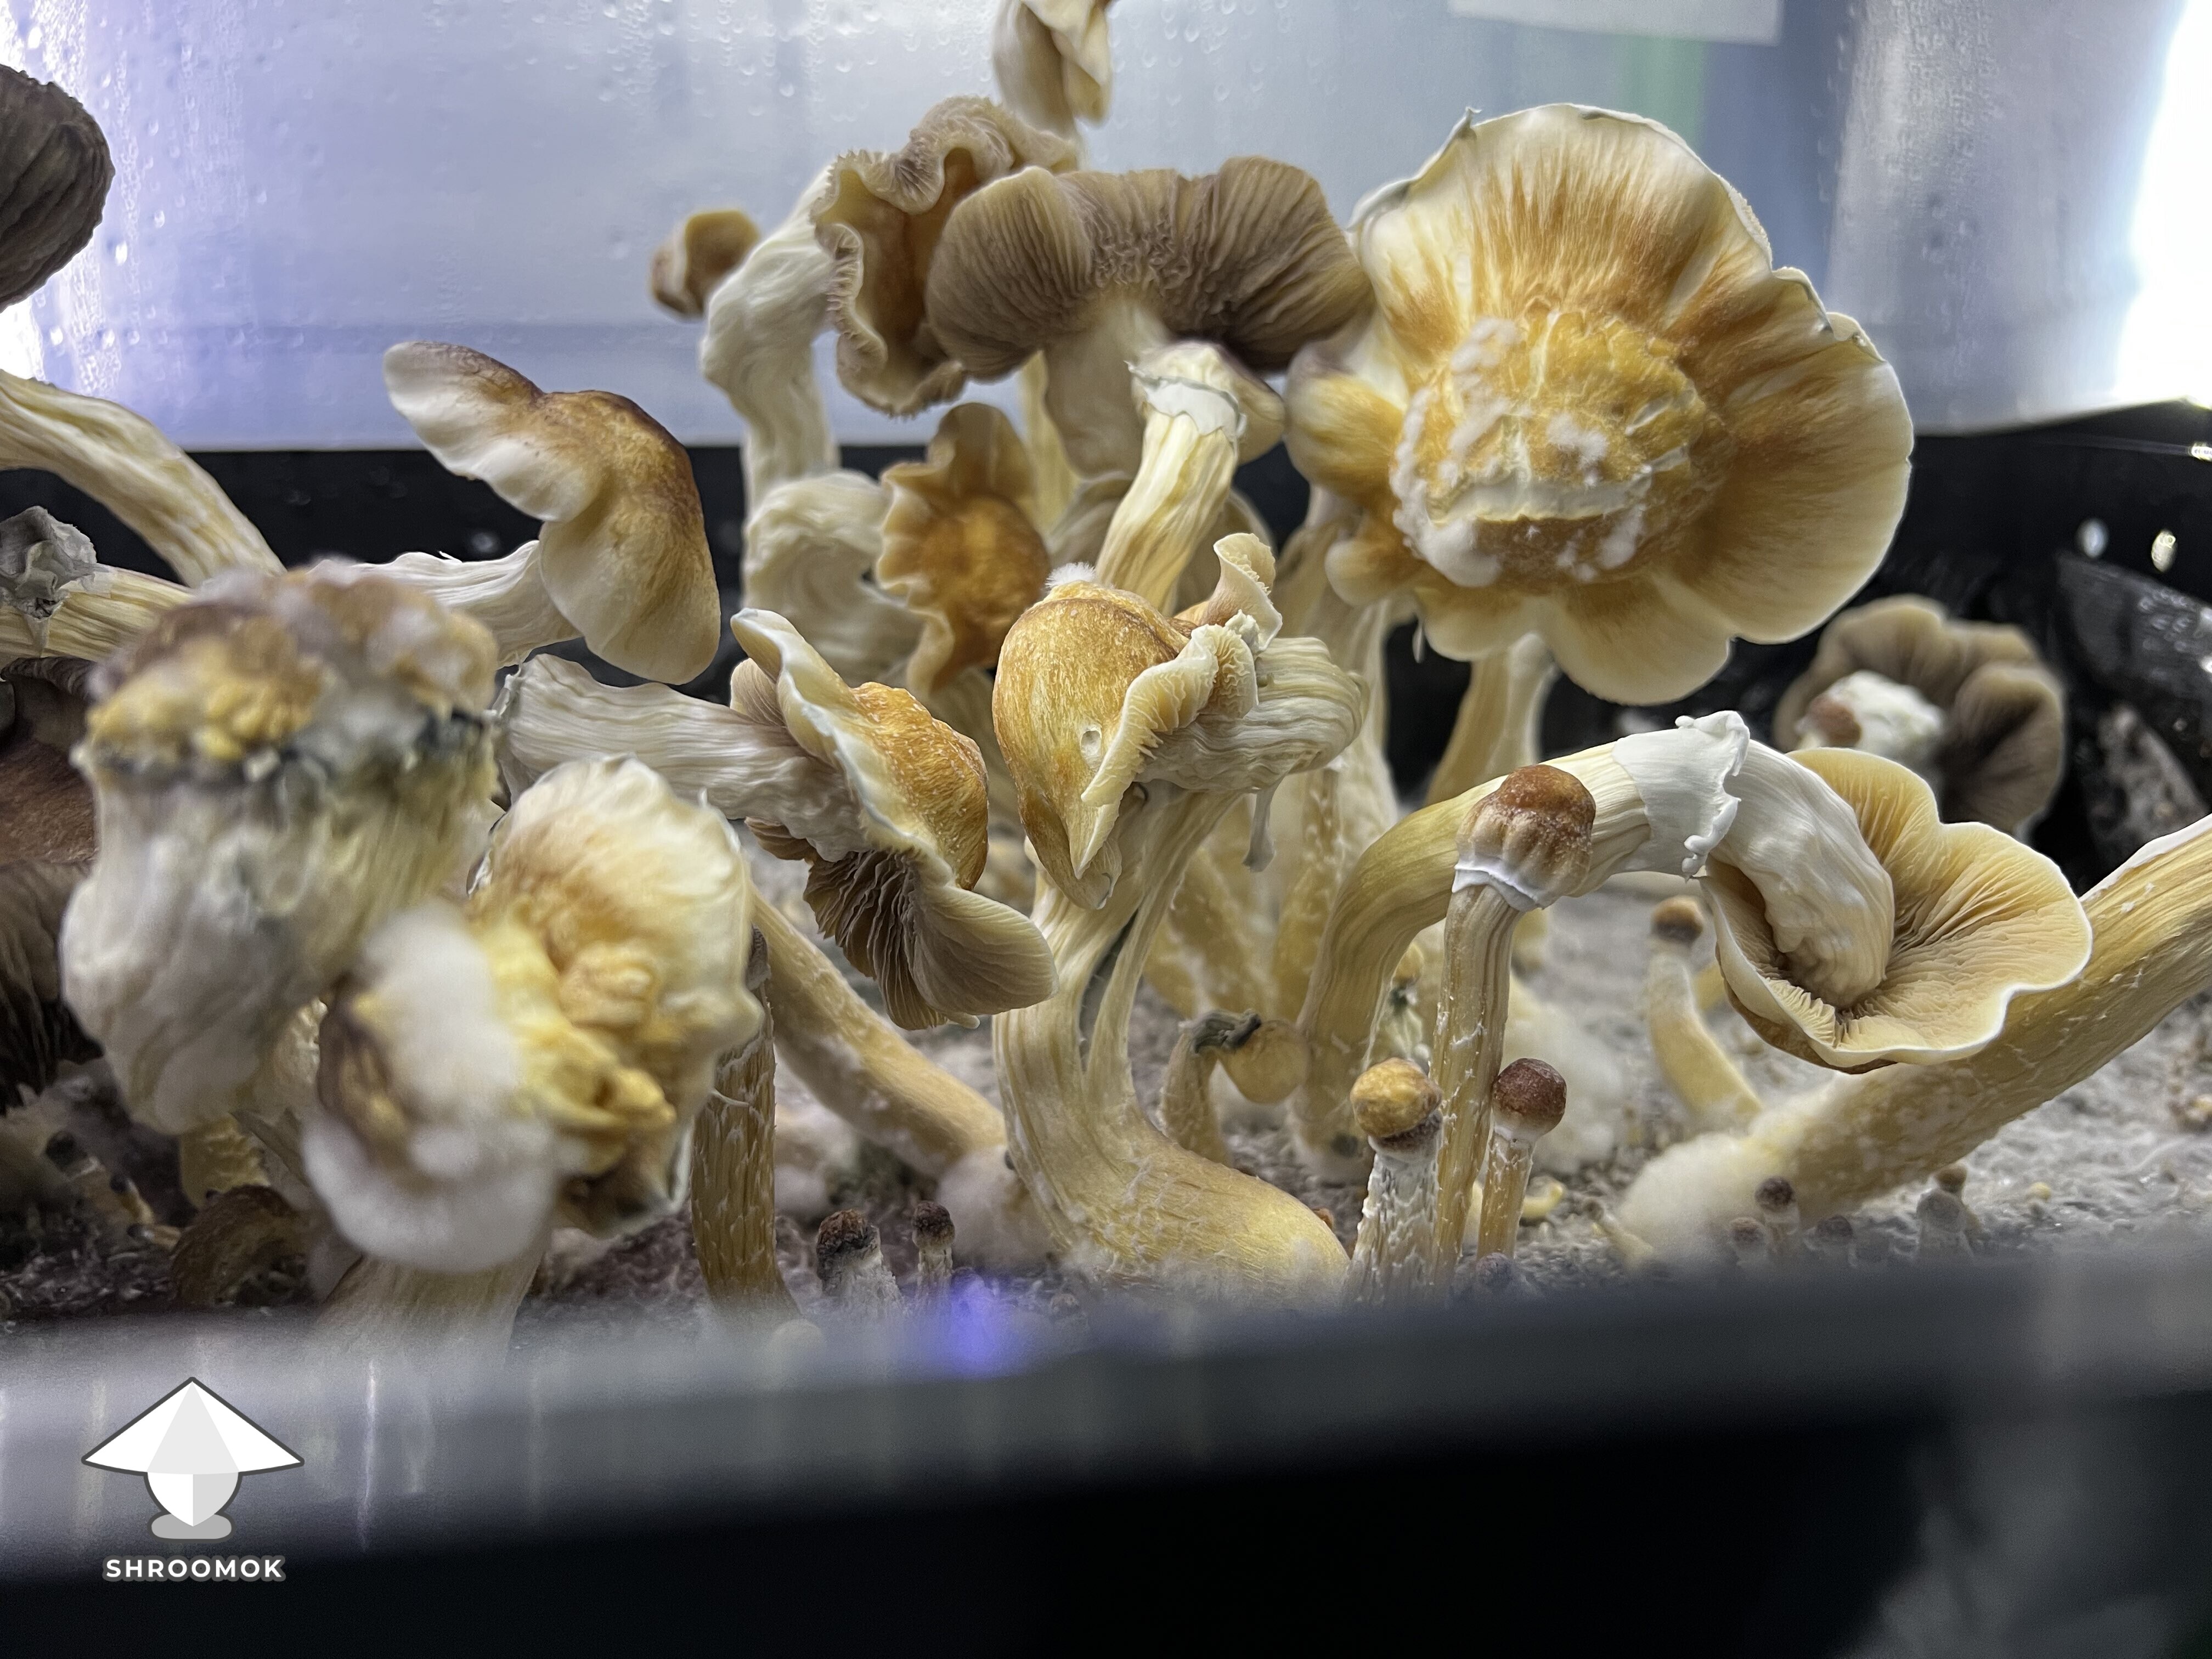 Ghidorah magic mushrooms growing #4